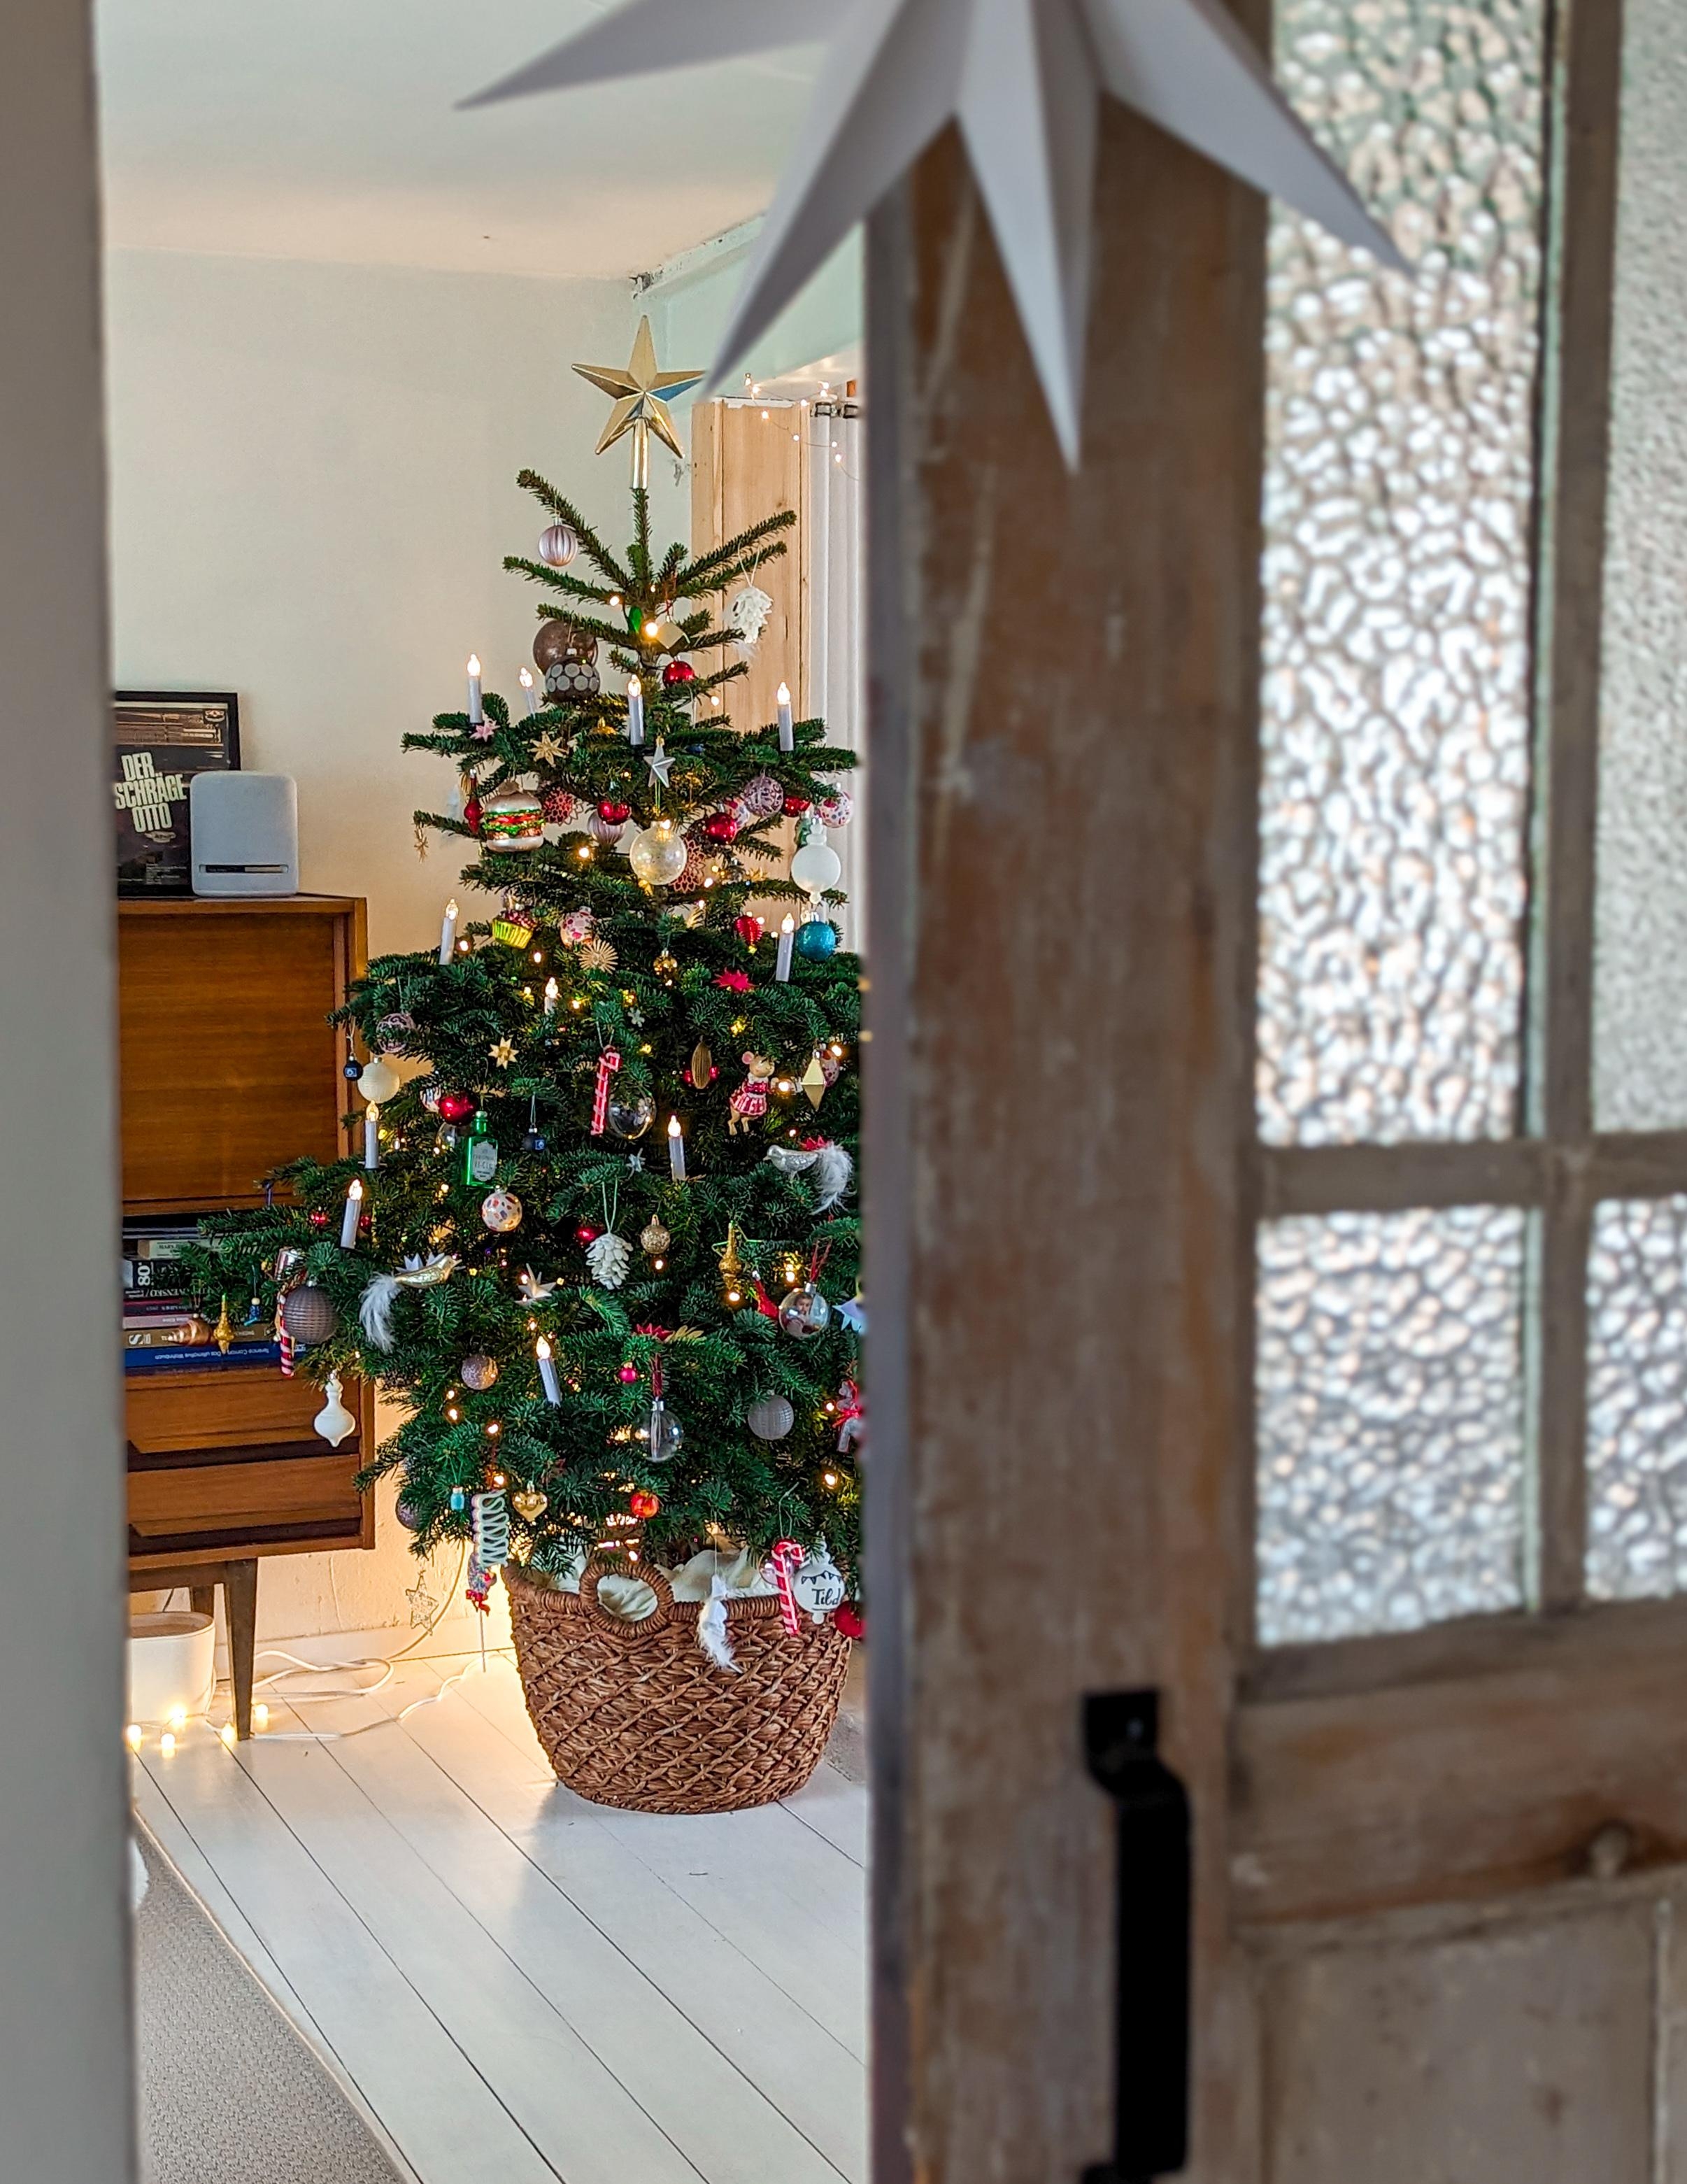 Der #Weihnachtsbaum ist geschmückt und wir sind bereit für das Christkind

#weihnachten #weihnachtszeit #weihnachtsdeko #xmasdecor #xmastime #altbau #vintage 